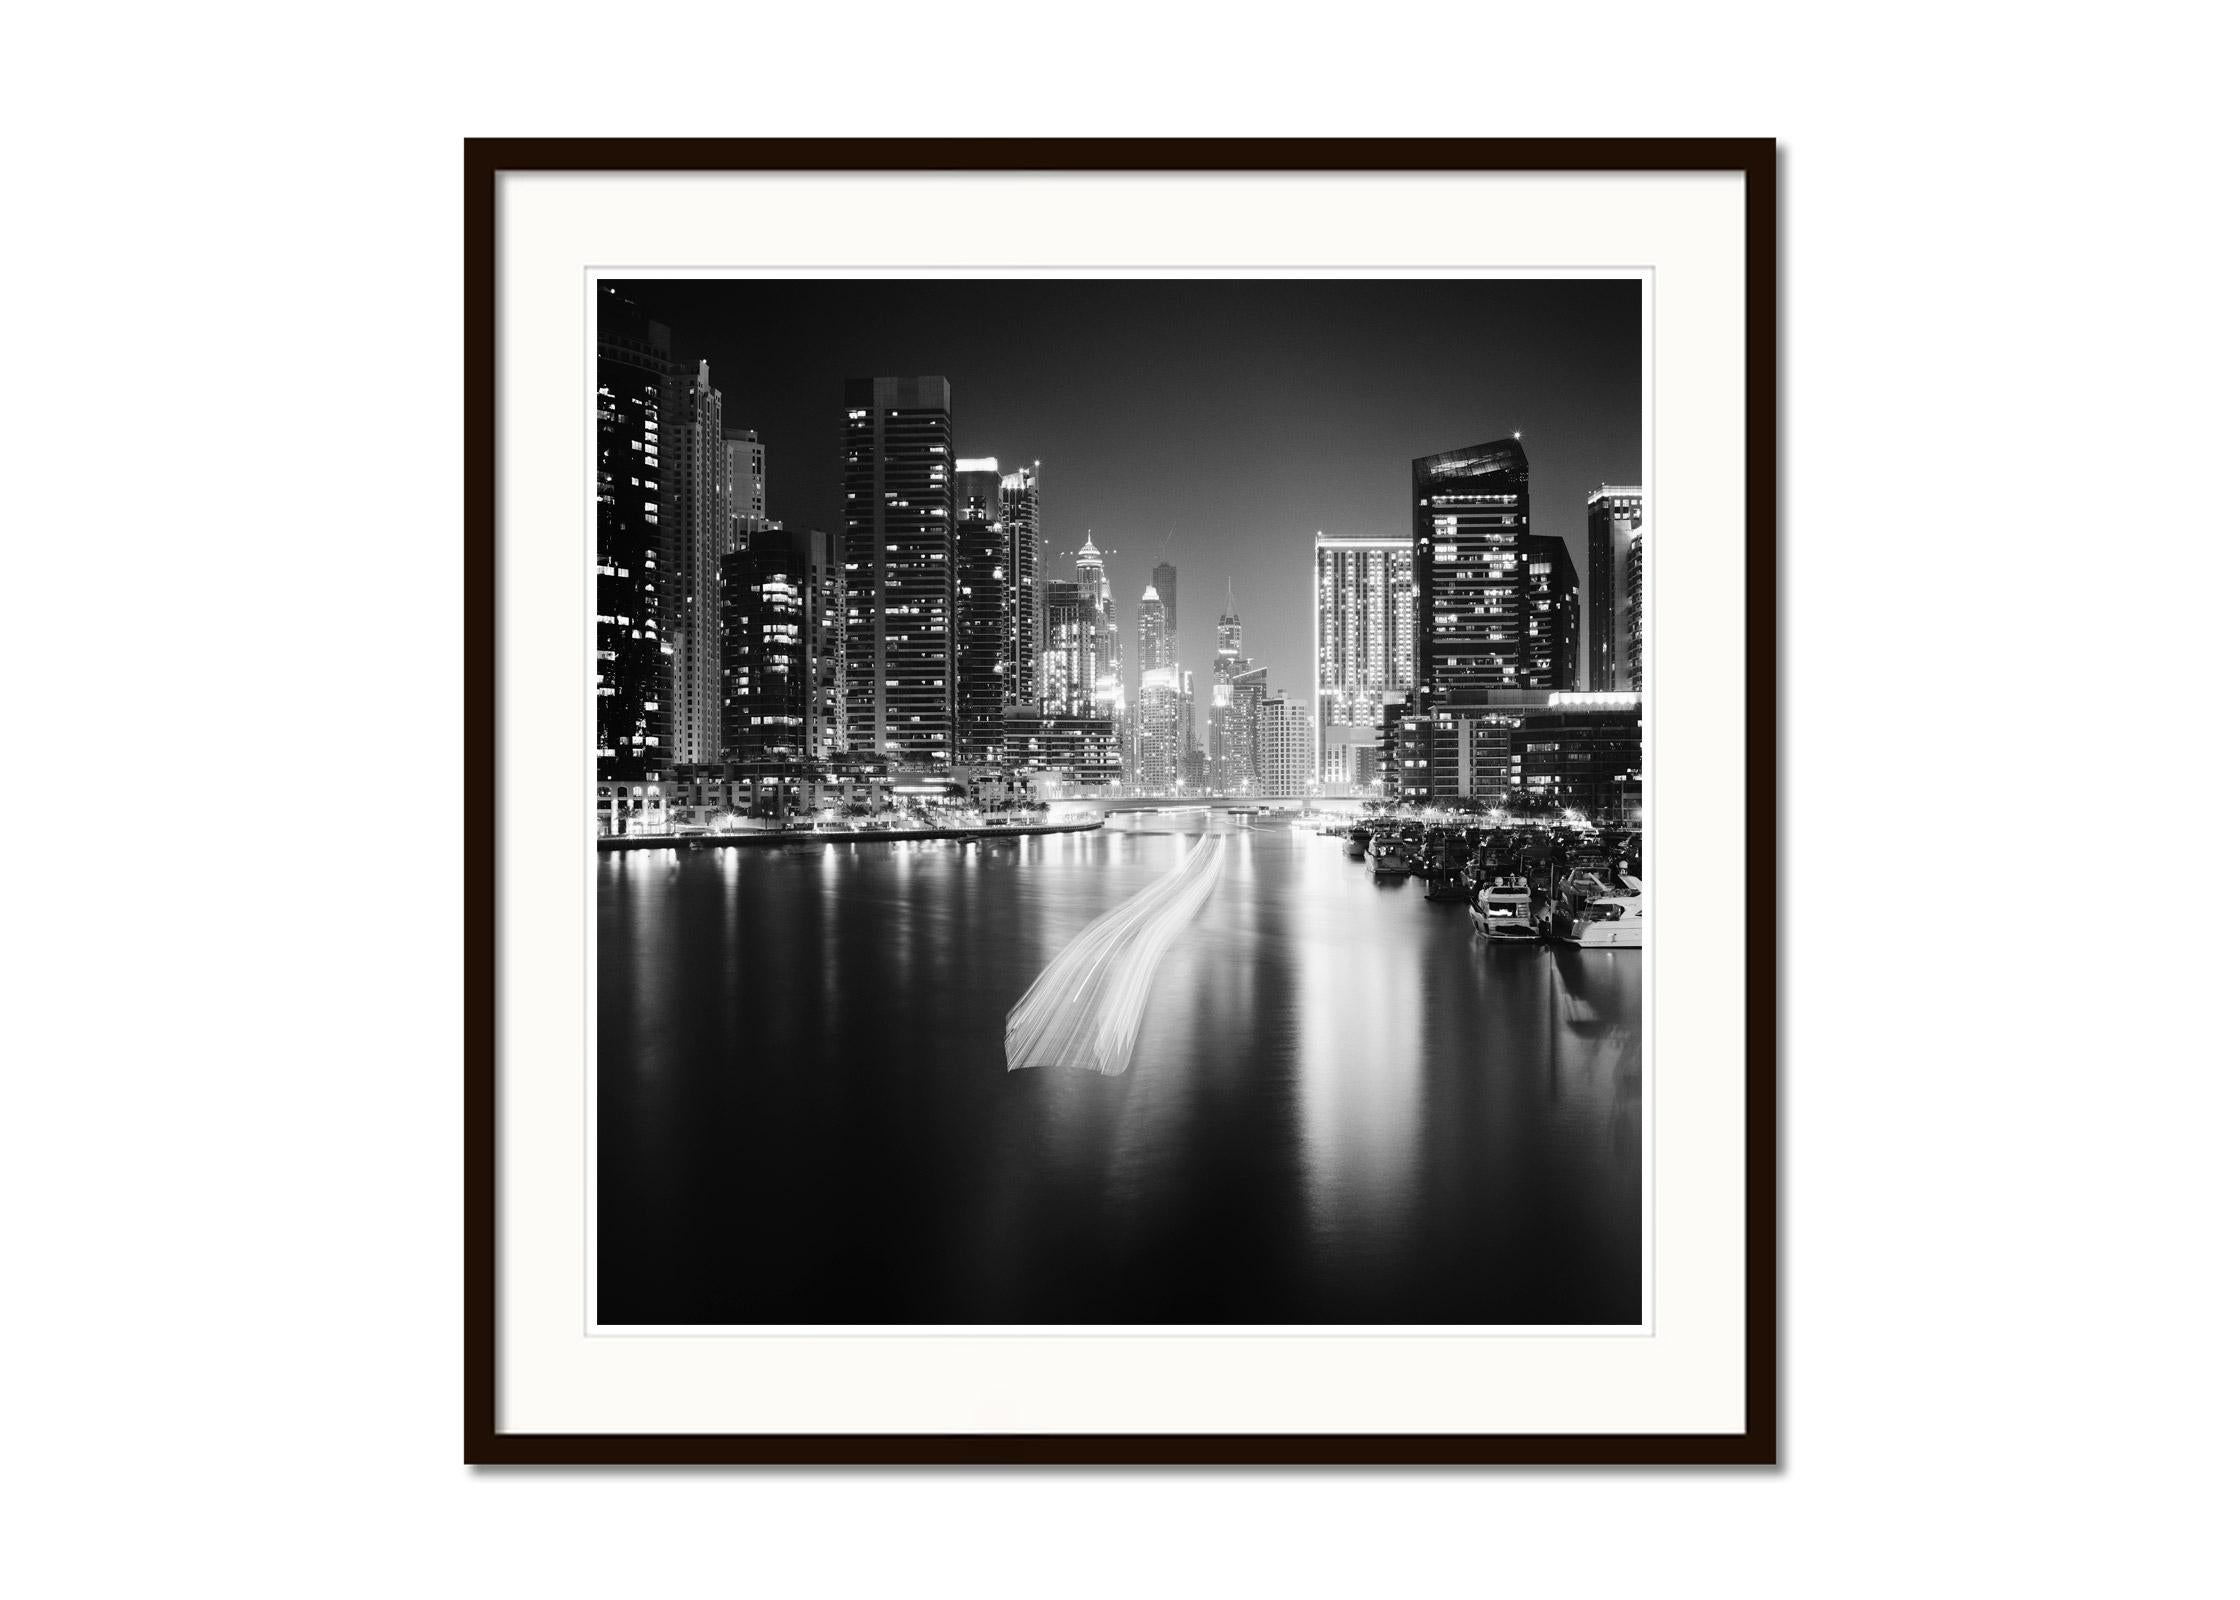 Schwarz-Weiß-Fotografie - Dubai Marina bei Nacht mit Wolkenkratzern, Yachten und Promenade, Langzeitbelichtung. Pigmenttintendruck, Auflage: 20 Stück. Signiert, betitelt, datiert und nummeriert vom Künstler. Mit Echtheitszertifikat. Bedruckt mit